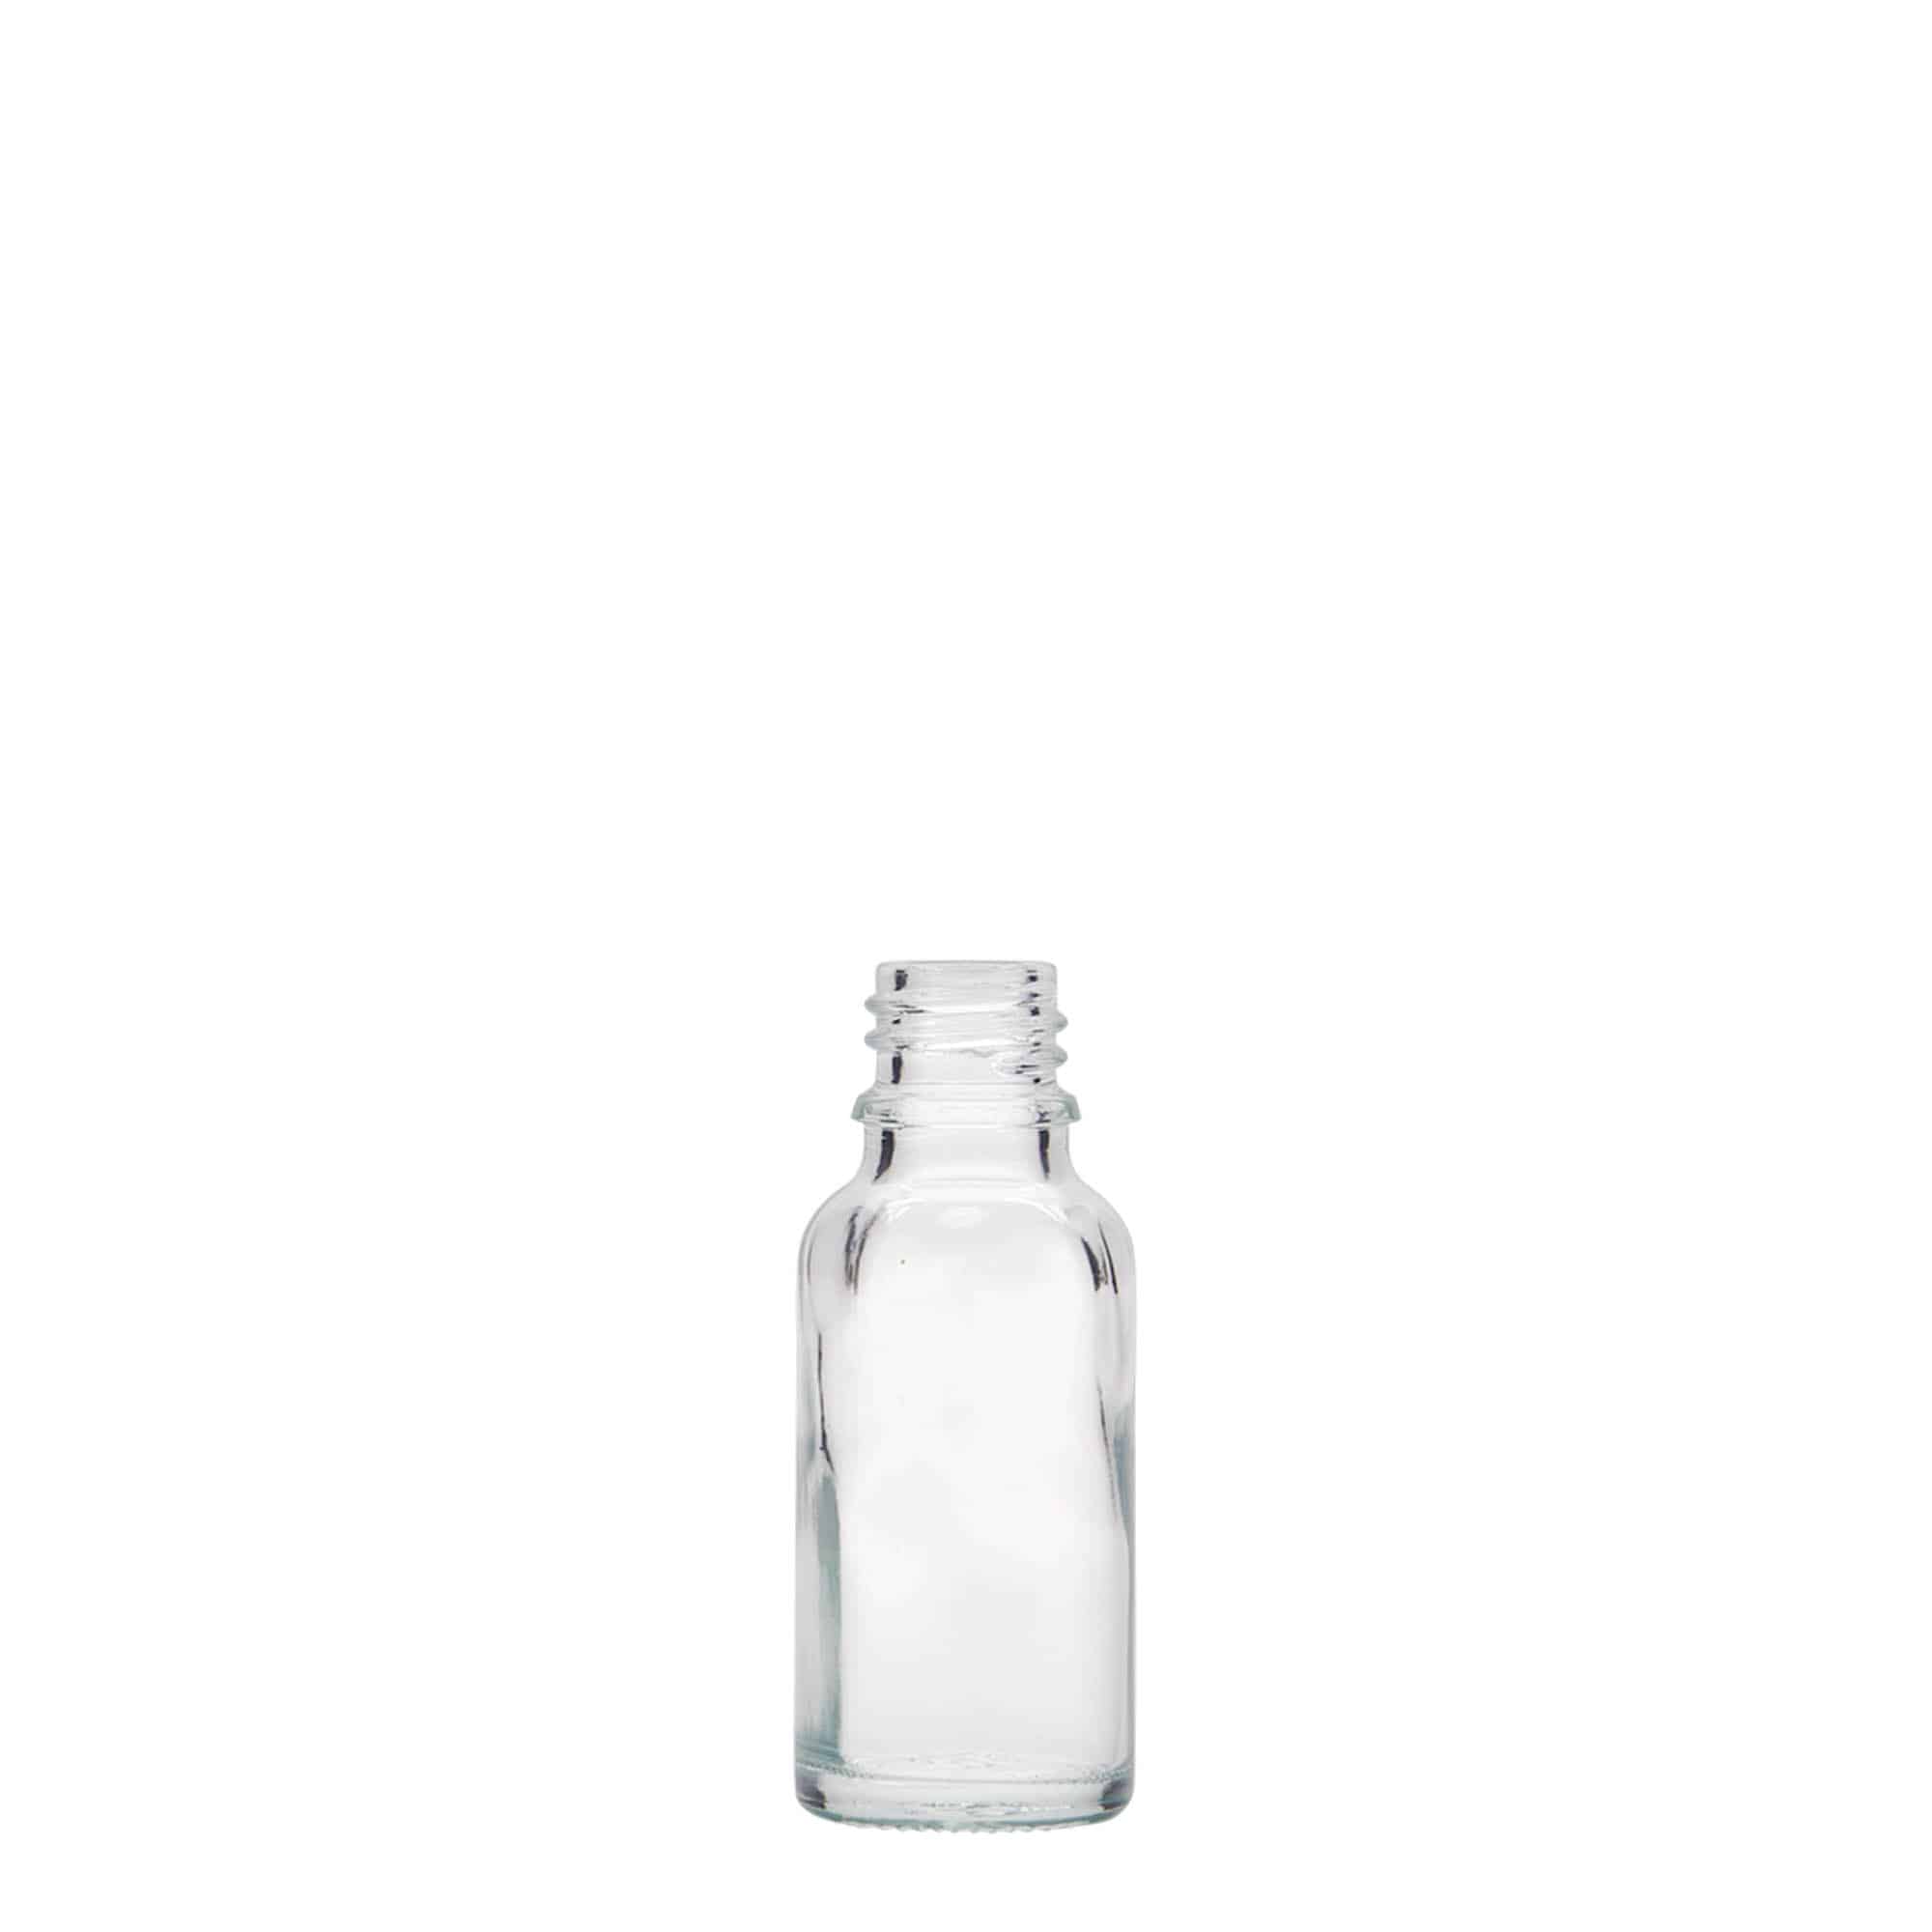 20 ml butelka farmaceutyczna, szkło, zamknięcie: DIN 18